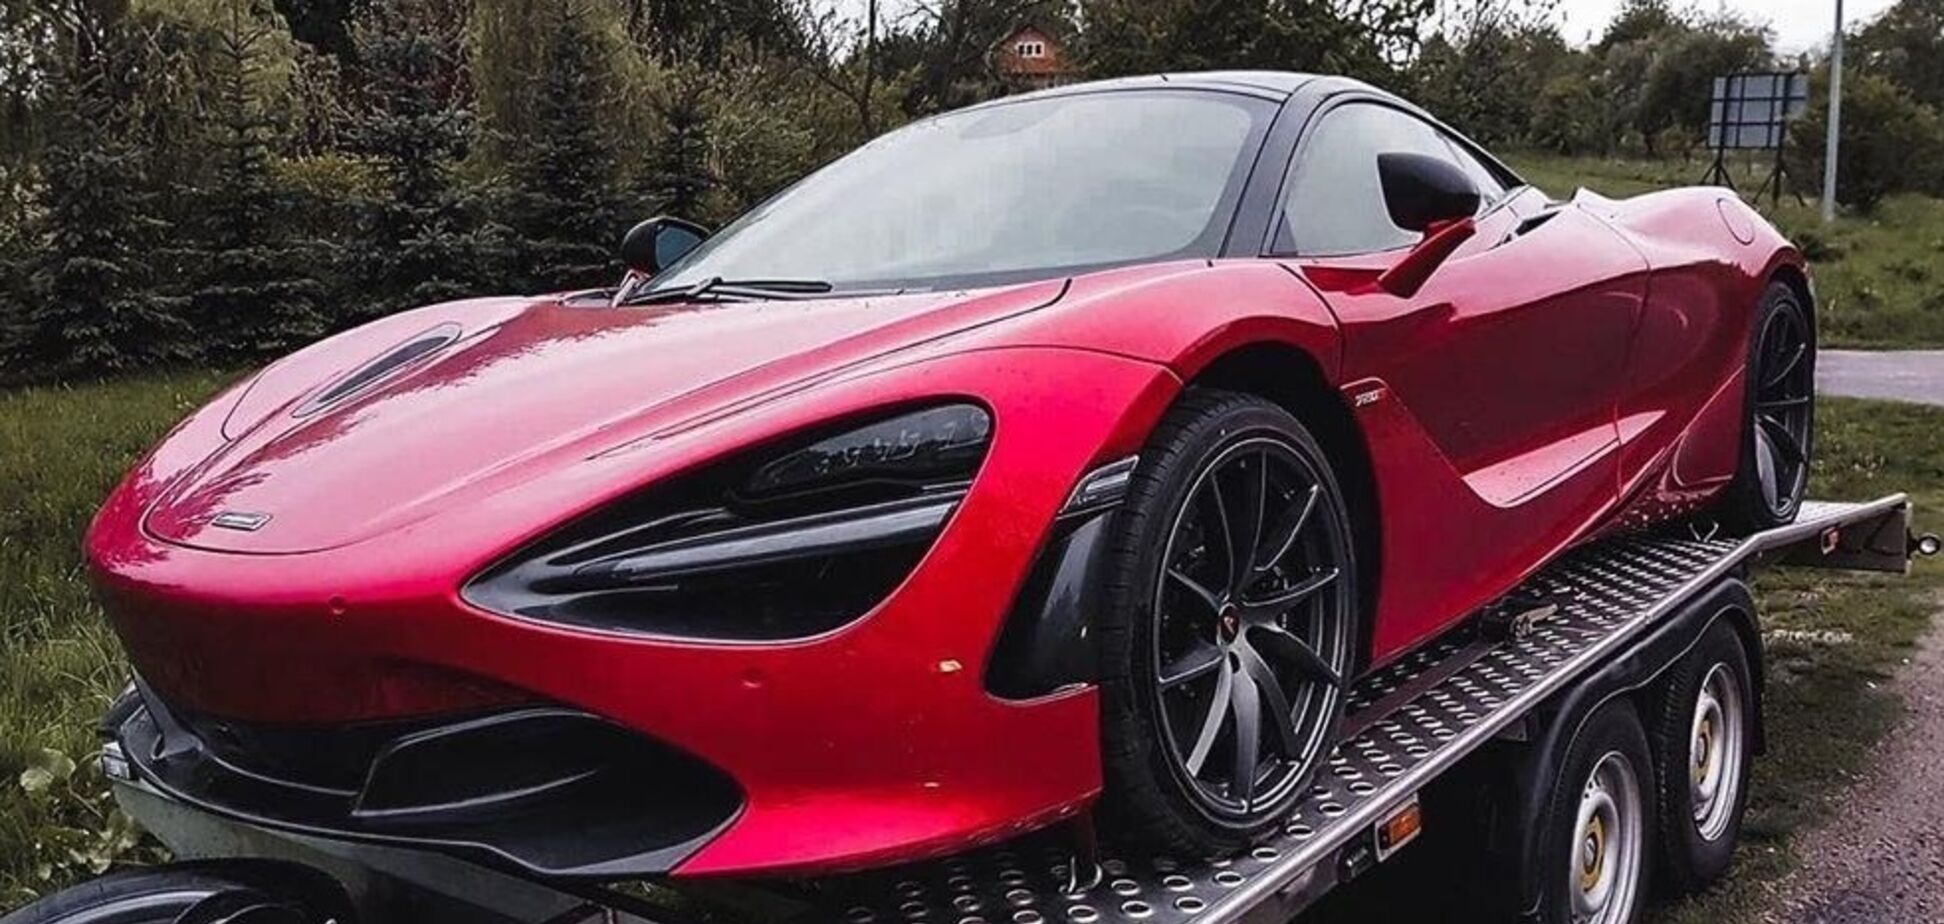 Суперкар за $300 000: в Європі помітили рідкісне авто з України